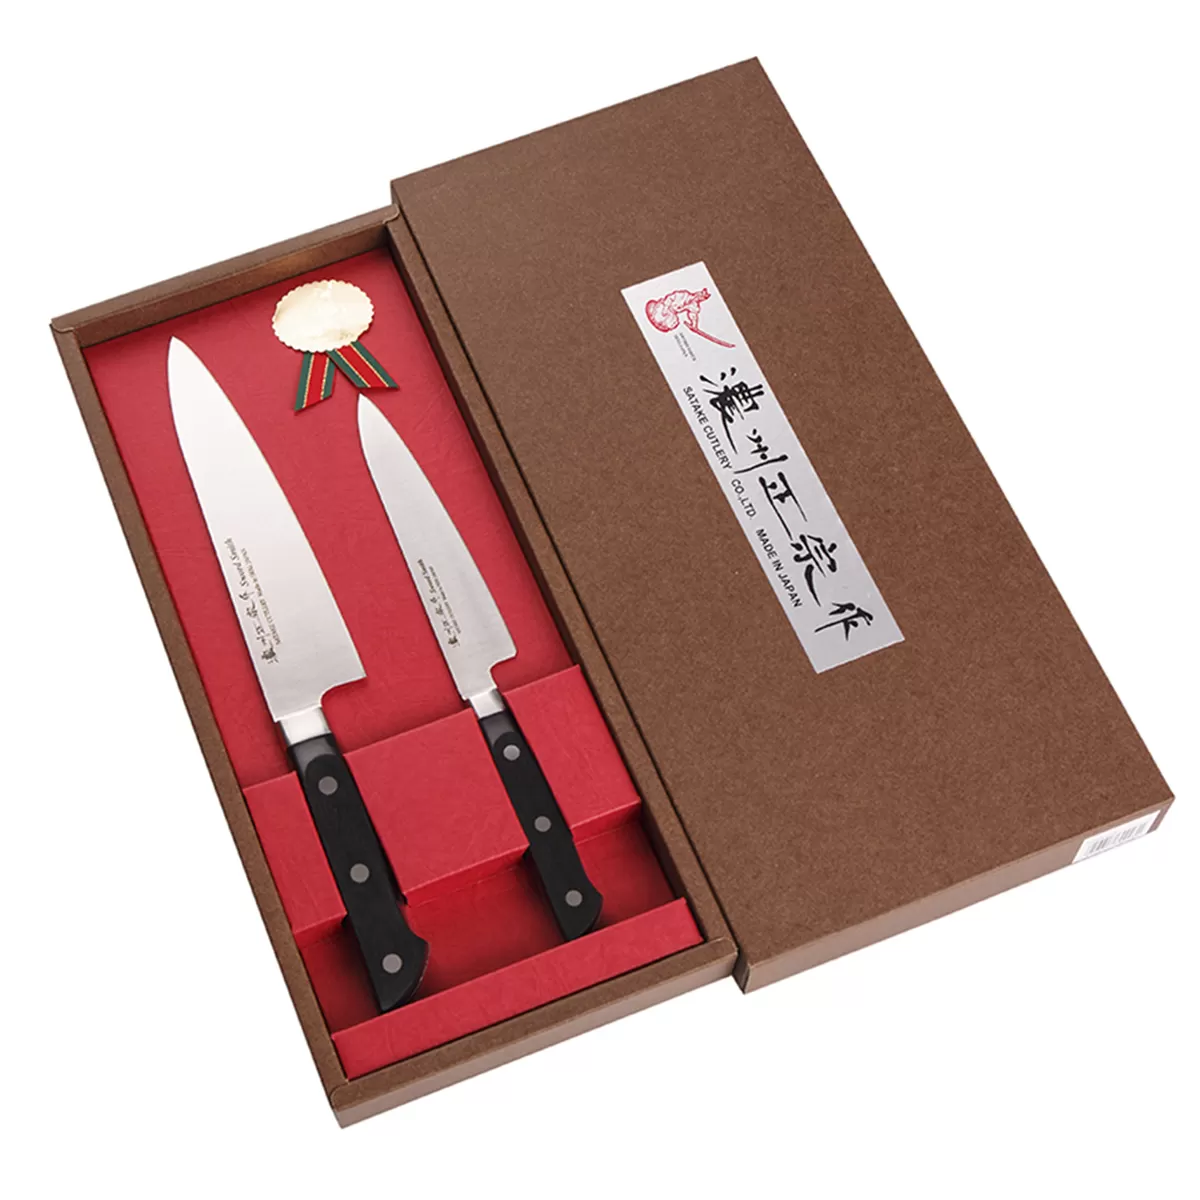 Подарочный набор Satake Stainless Bolster из 2 ножей (803-625,803-663), сталь DSR1K6 58HRC ручка ABS пла сталь DSR1K6 58HRC ручка ABS пластик Япония